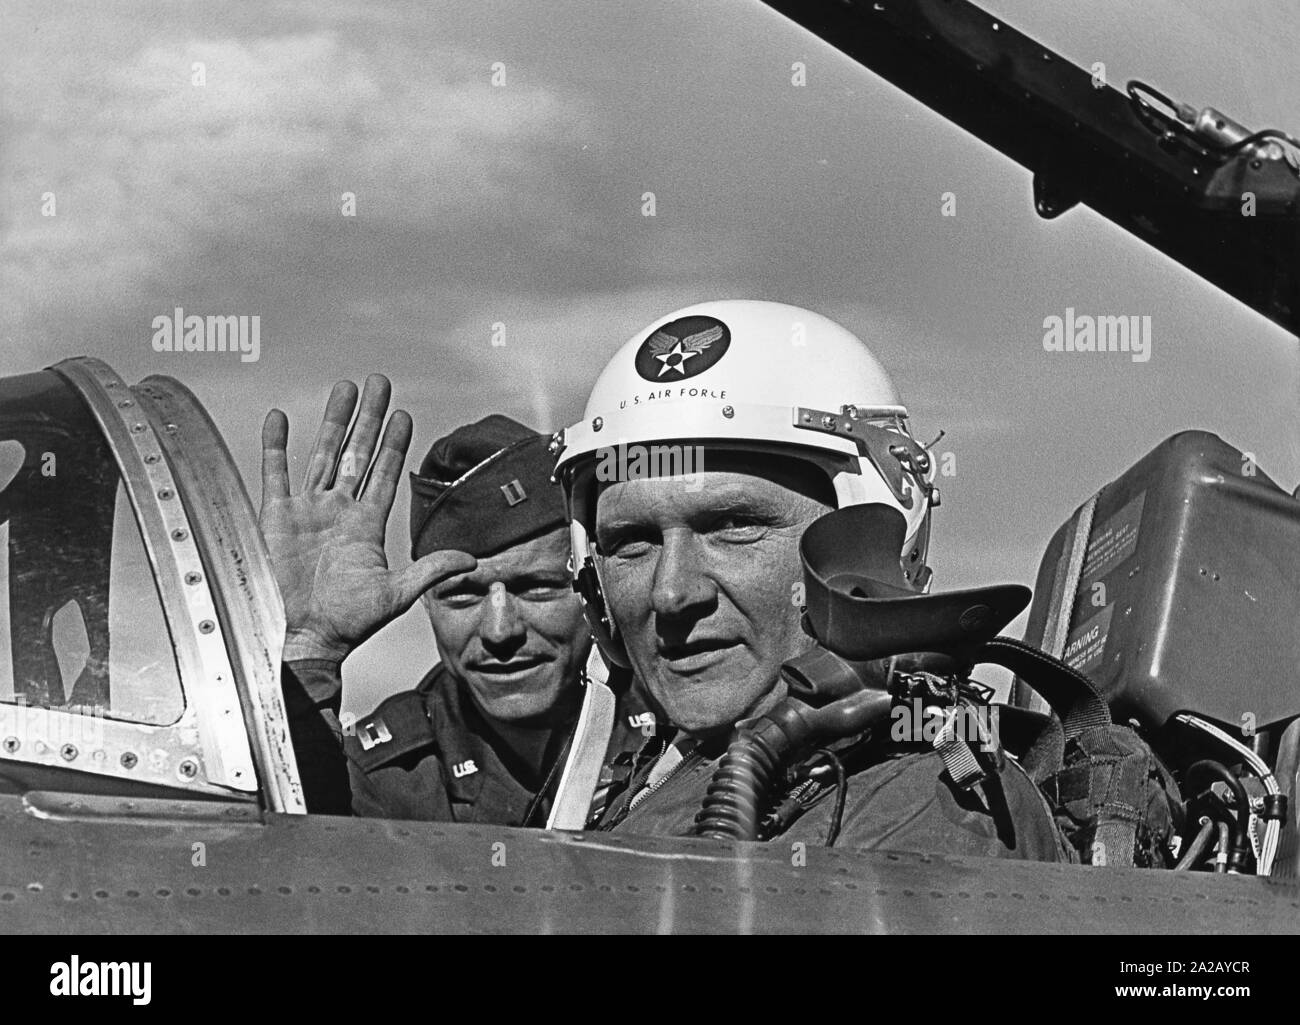 Ein deutscher Pilot mit seiner amerikanischen Ausbilder im Cockpit eines Flugzeugs vom Typ T-33. Die Piloten der Deutschen Luftwaffe werden von Amerikanern ausgebildet. Stockfoto